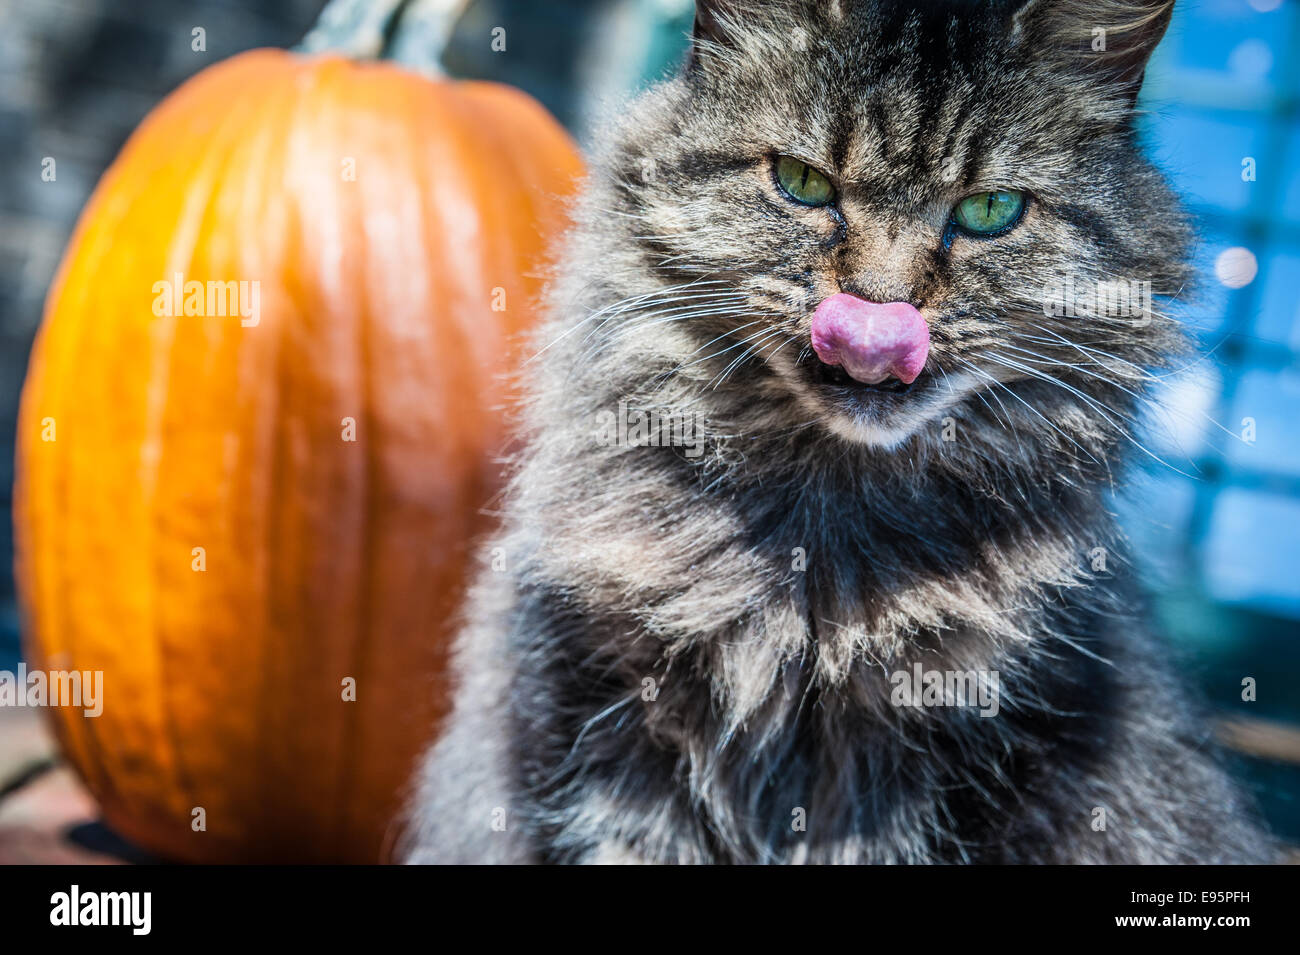 Green-Eyed Katze leckt ihre Lippen und starrt unverwandt aus ihrem Barsch vor einem sonnenbeschienenen Kürbis. Stockfoto